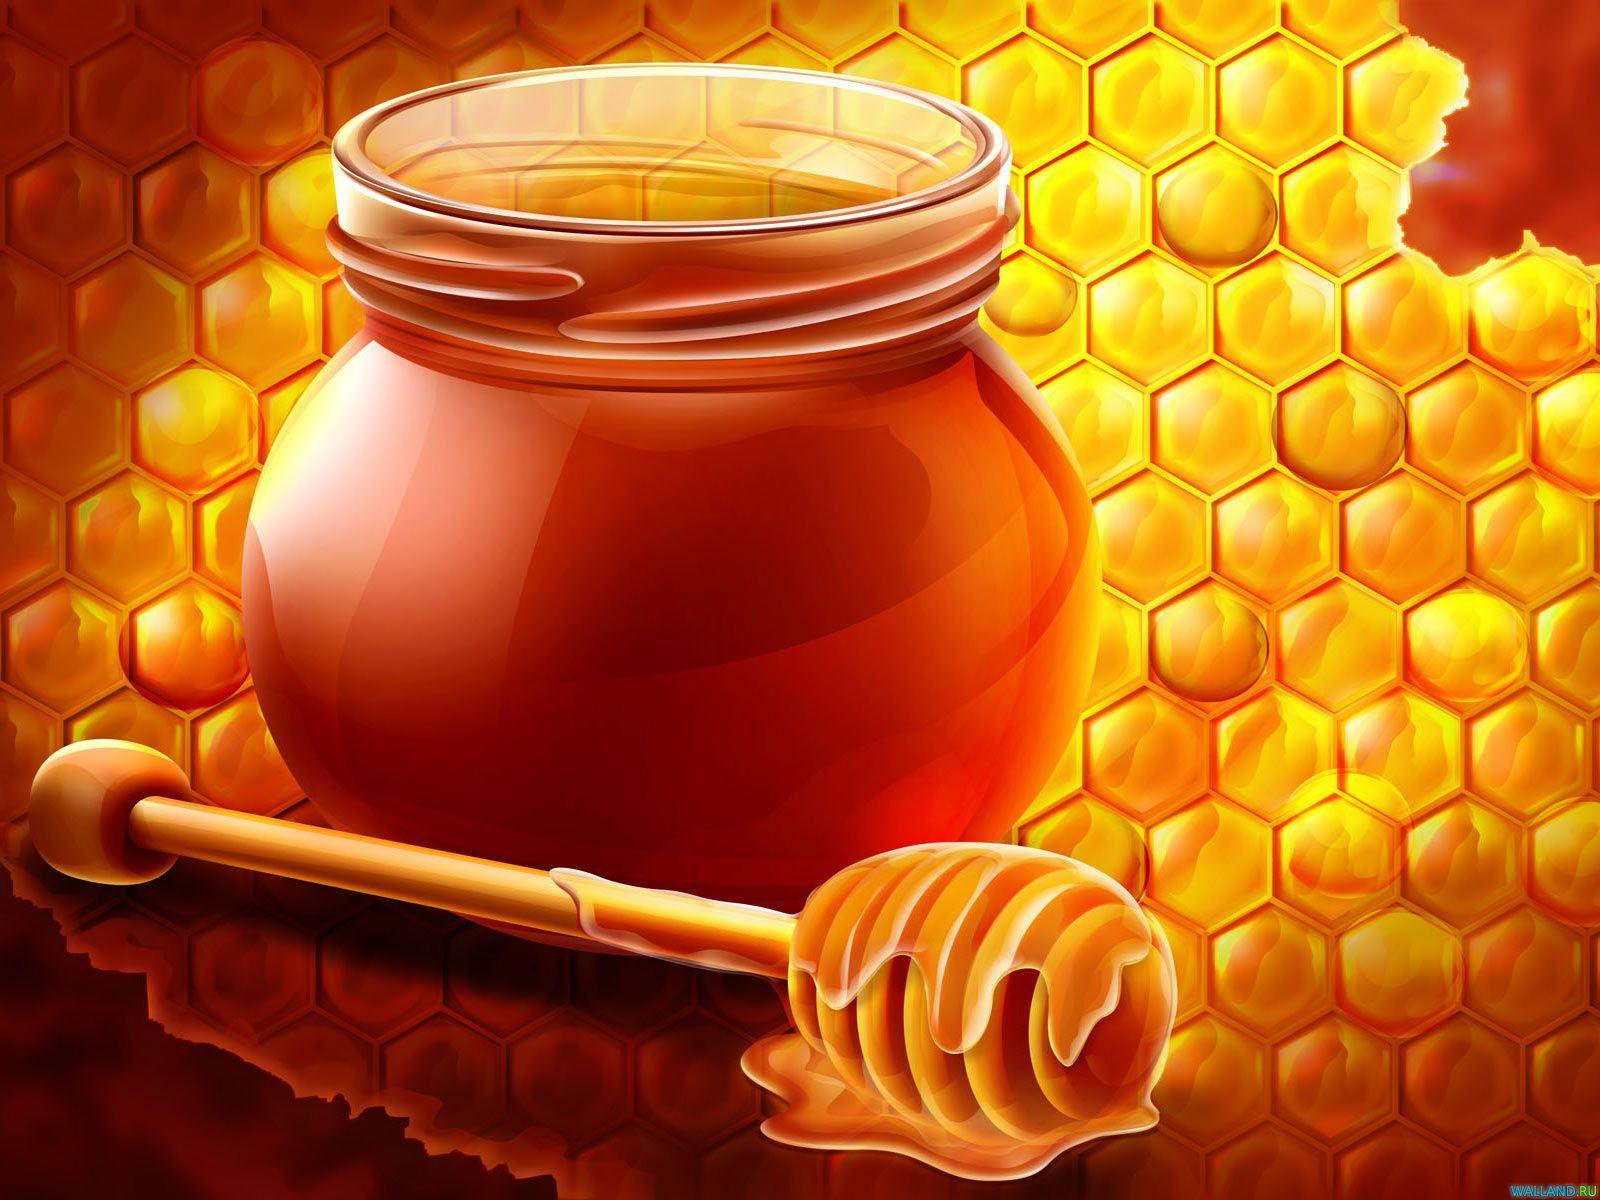 Honigbienenstock